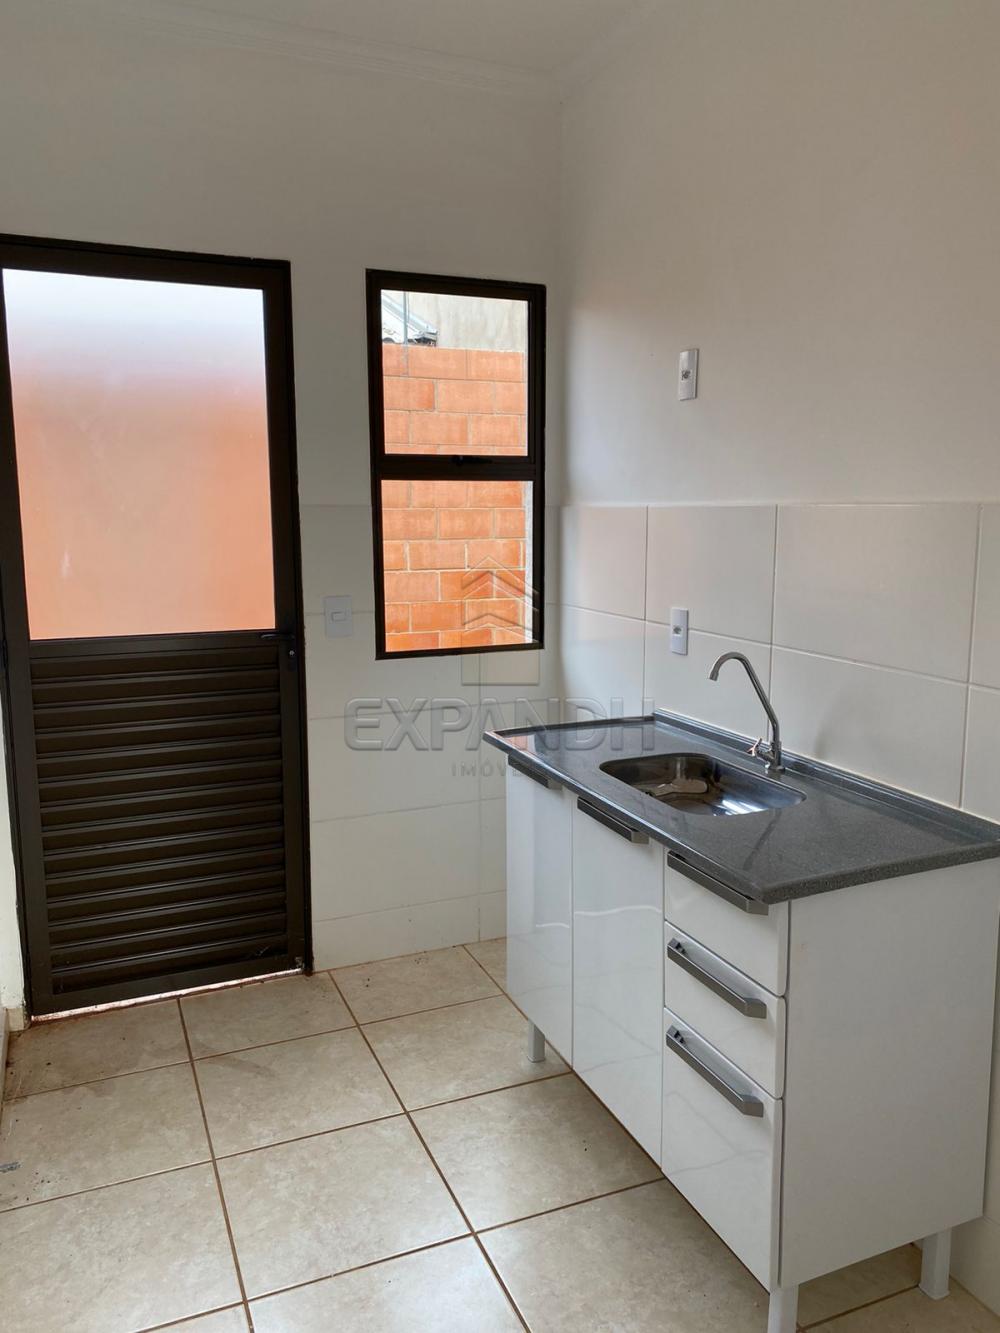 Alugar Casas / Condomínio em Sertãozinho R$ 850,00 - Foto 10